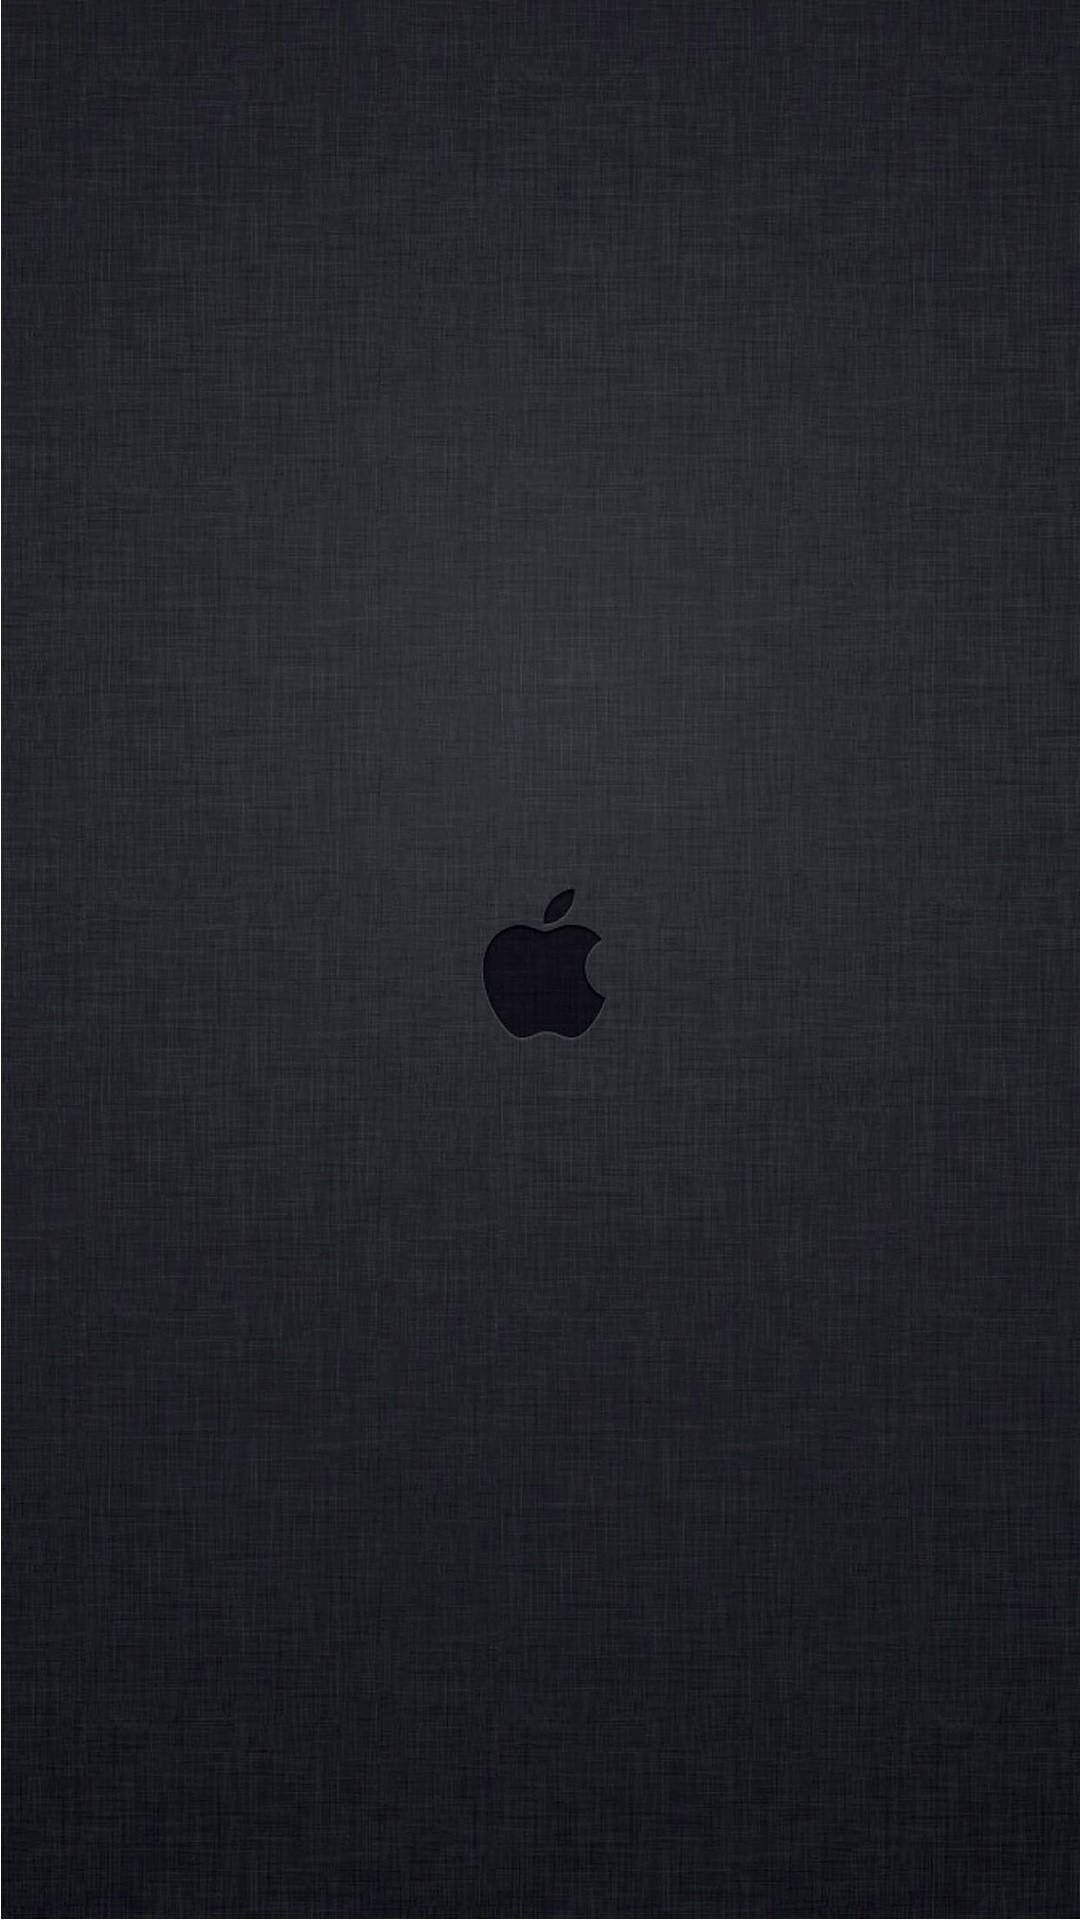 Embossed Apple Logo 4k